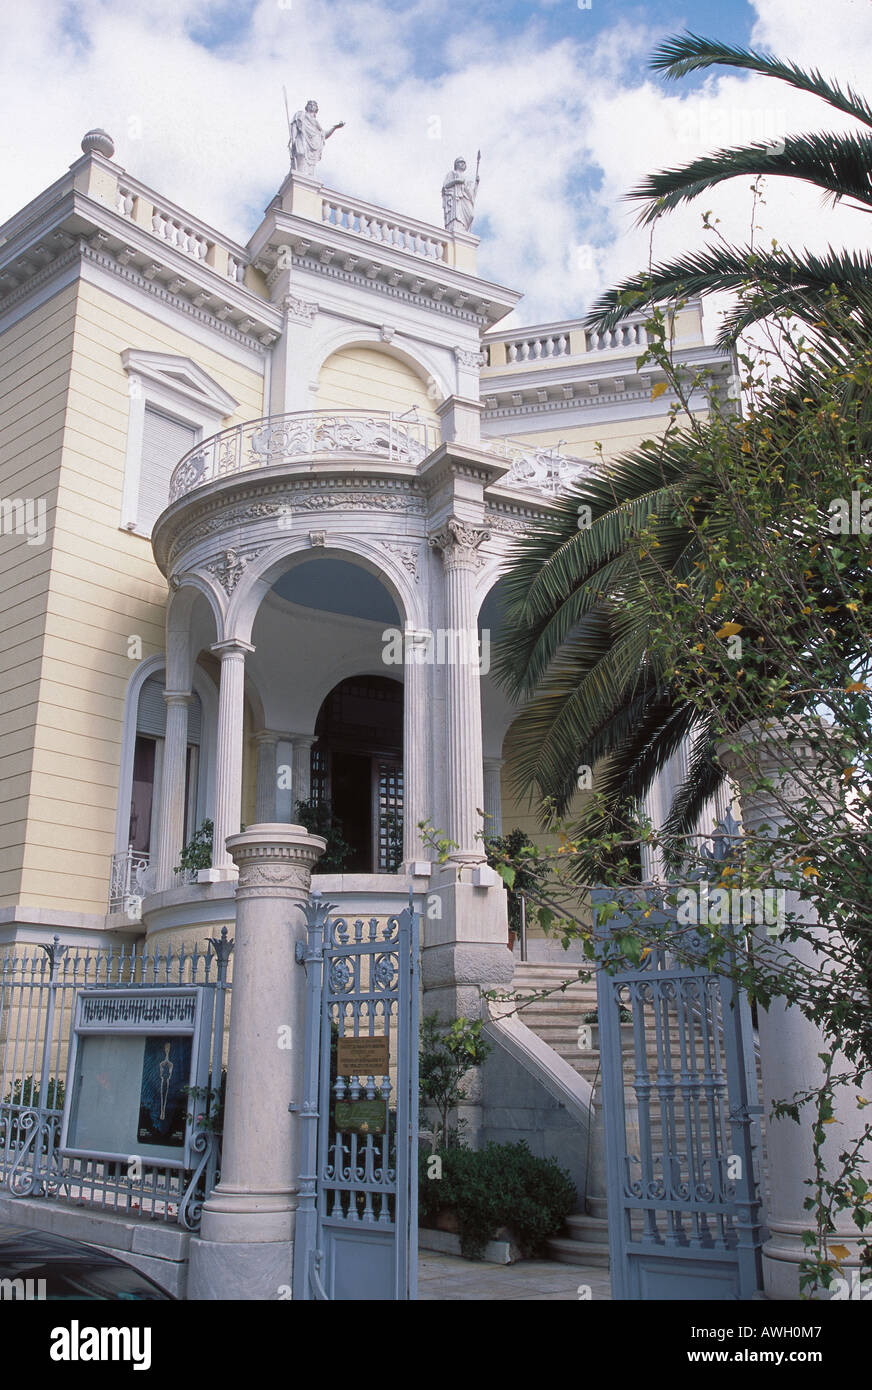 Griechenland, Athen, Museum für kykladische Kunst, Stathatos House, neoklassizistische Fassade Eingang Stockfoto